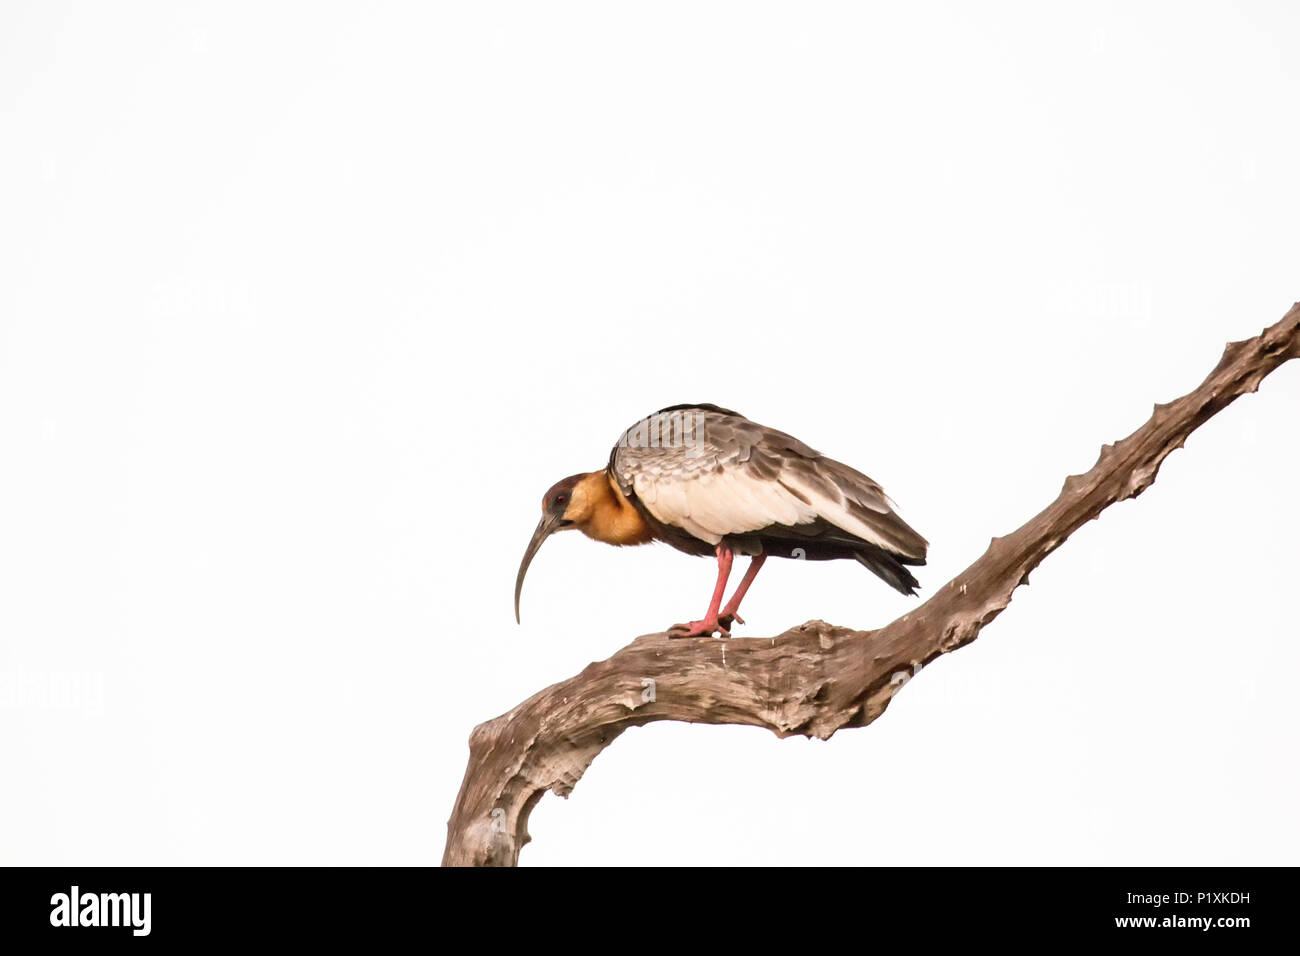 Regione Pantanal, Mato Grosso, Brasile, Sud America. Buff-Ibis a collo alto in un albero morto. Foto Stock